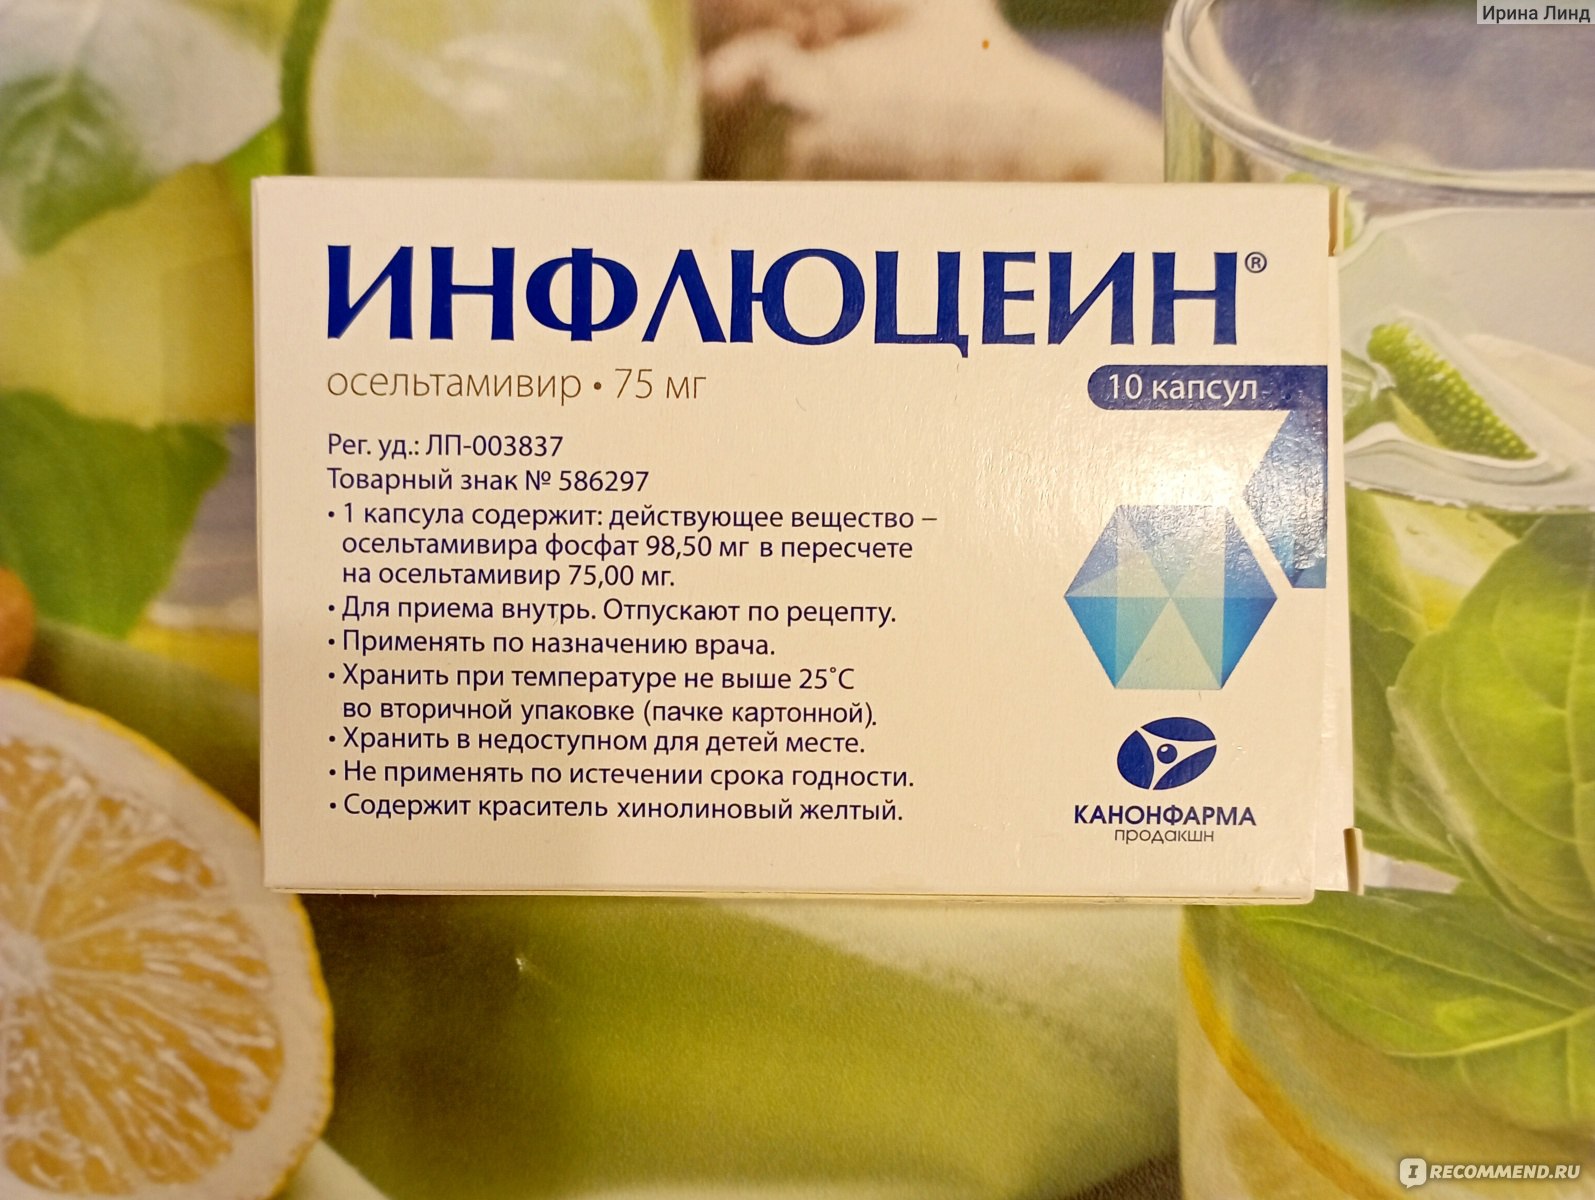 Лекарственный препарат Канонфарма Продакшн Инфлюцеин - «Грипп вышел из .